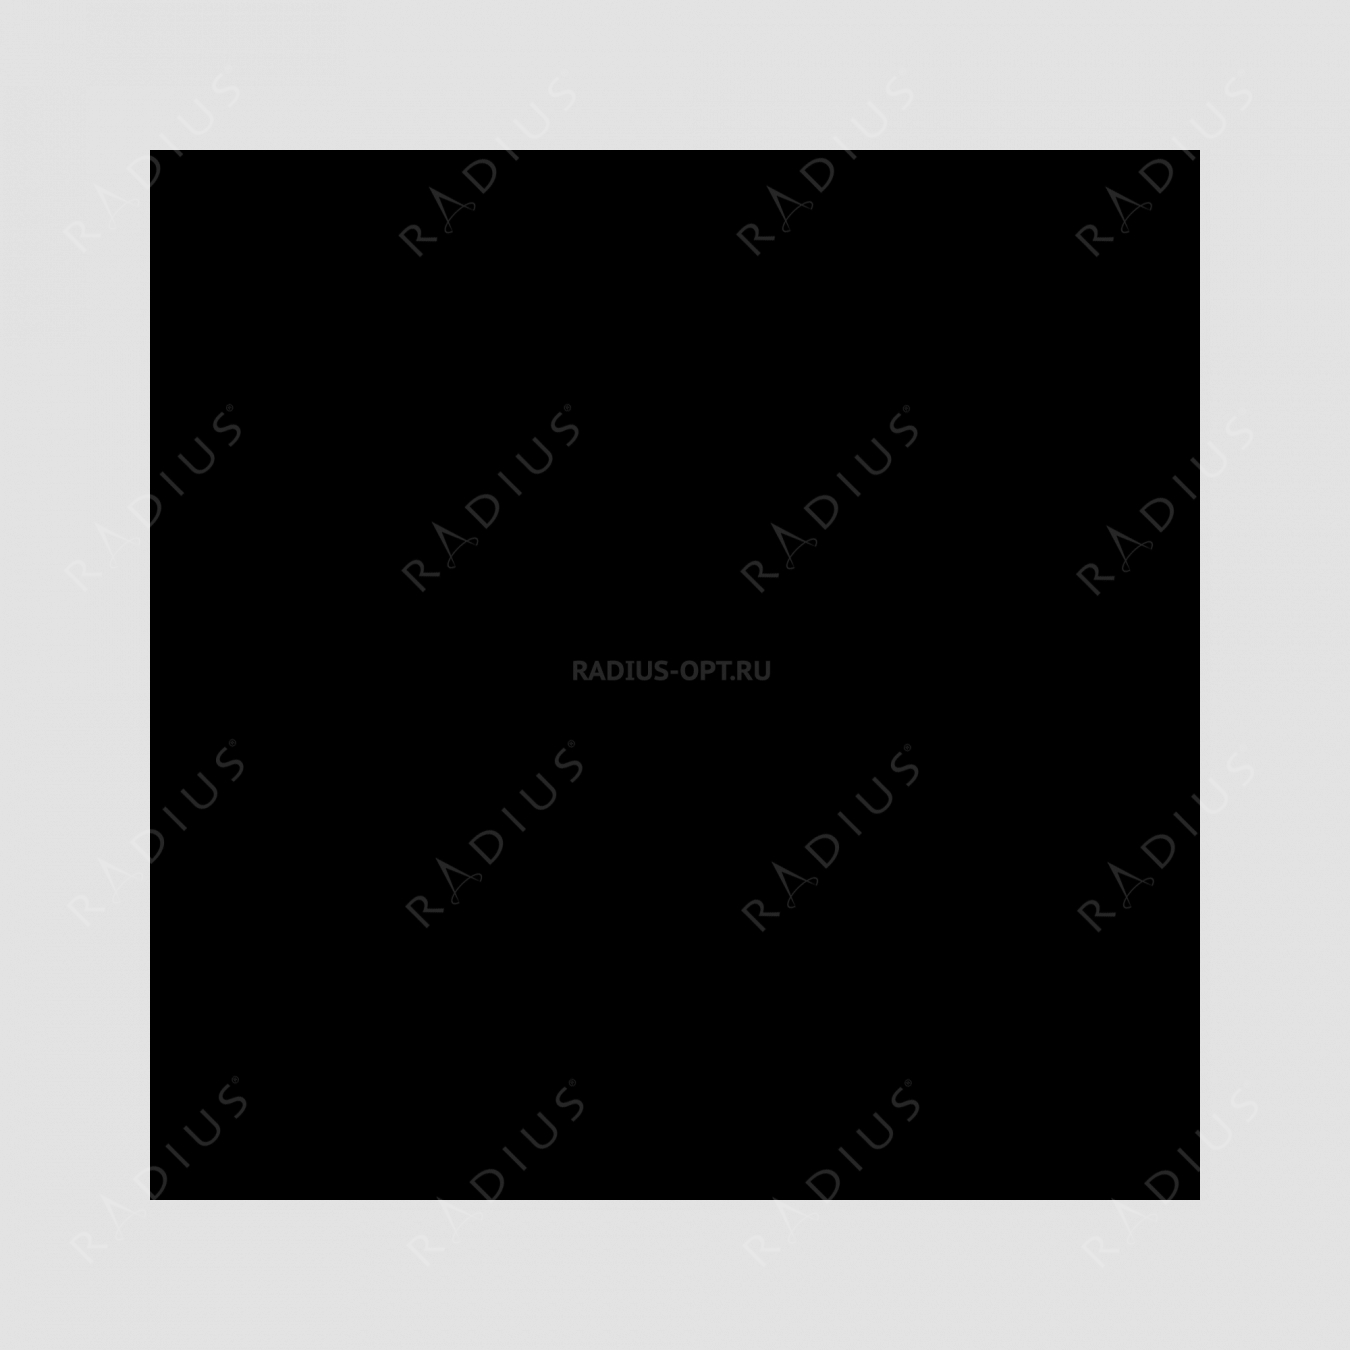 Кастрюля с крышкой, овальная, диаметр 31 см, объем 6,0 л, чугун с эмалированным покрытием, цвет рубин, серия Rubis, INVICTA, Франция